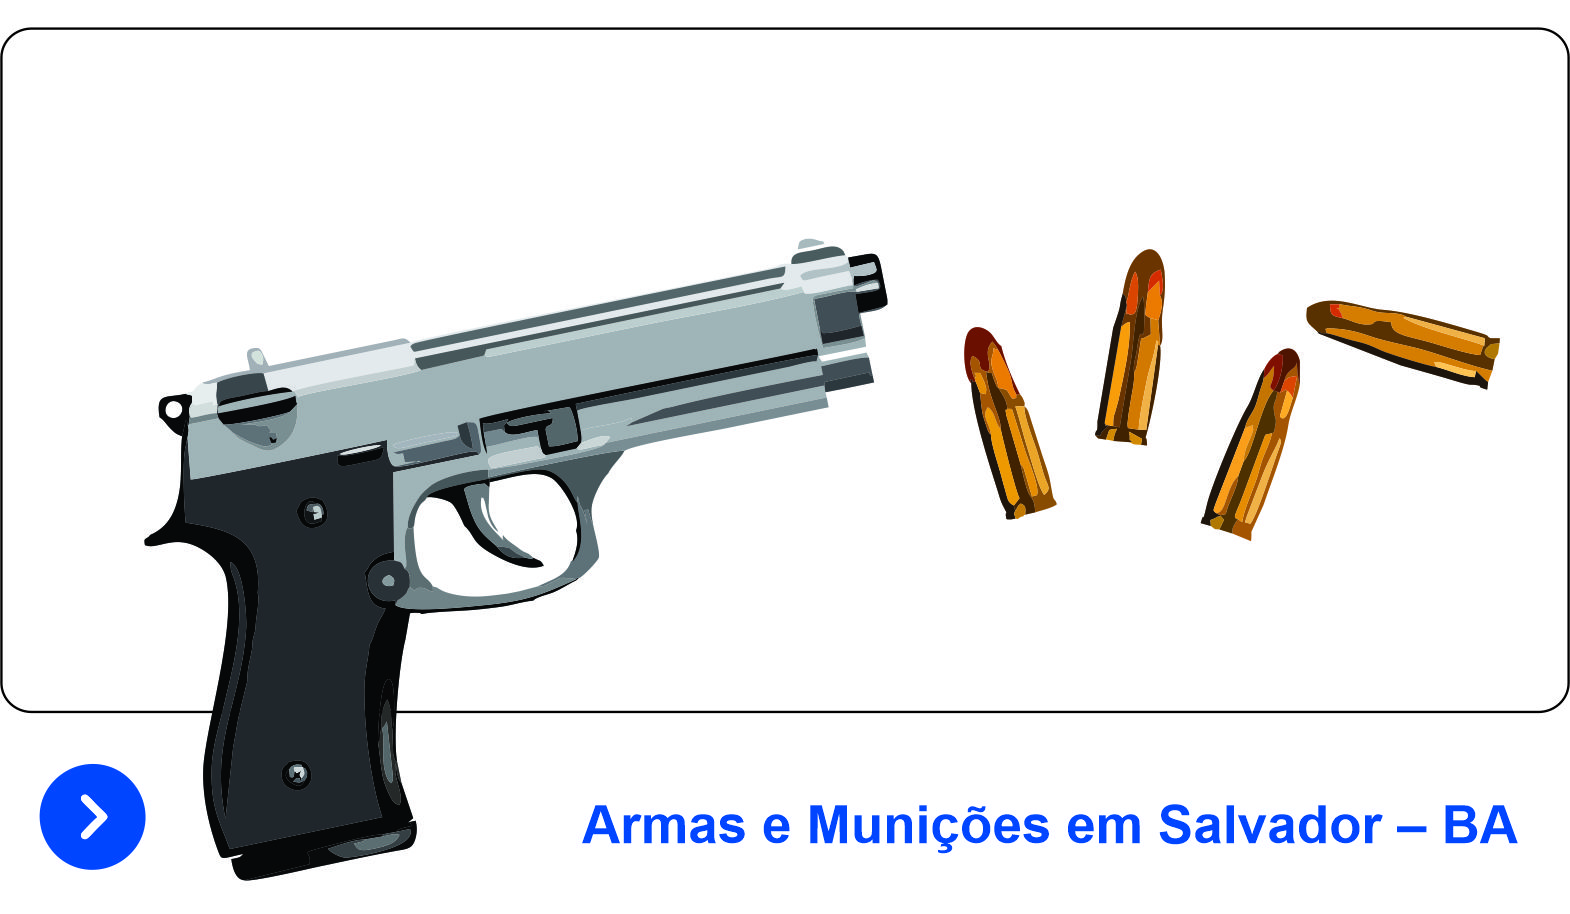 Home - Sniper Armas Bahia